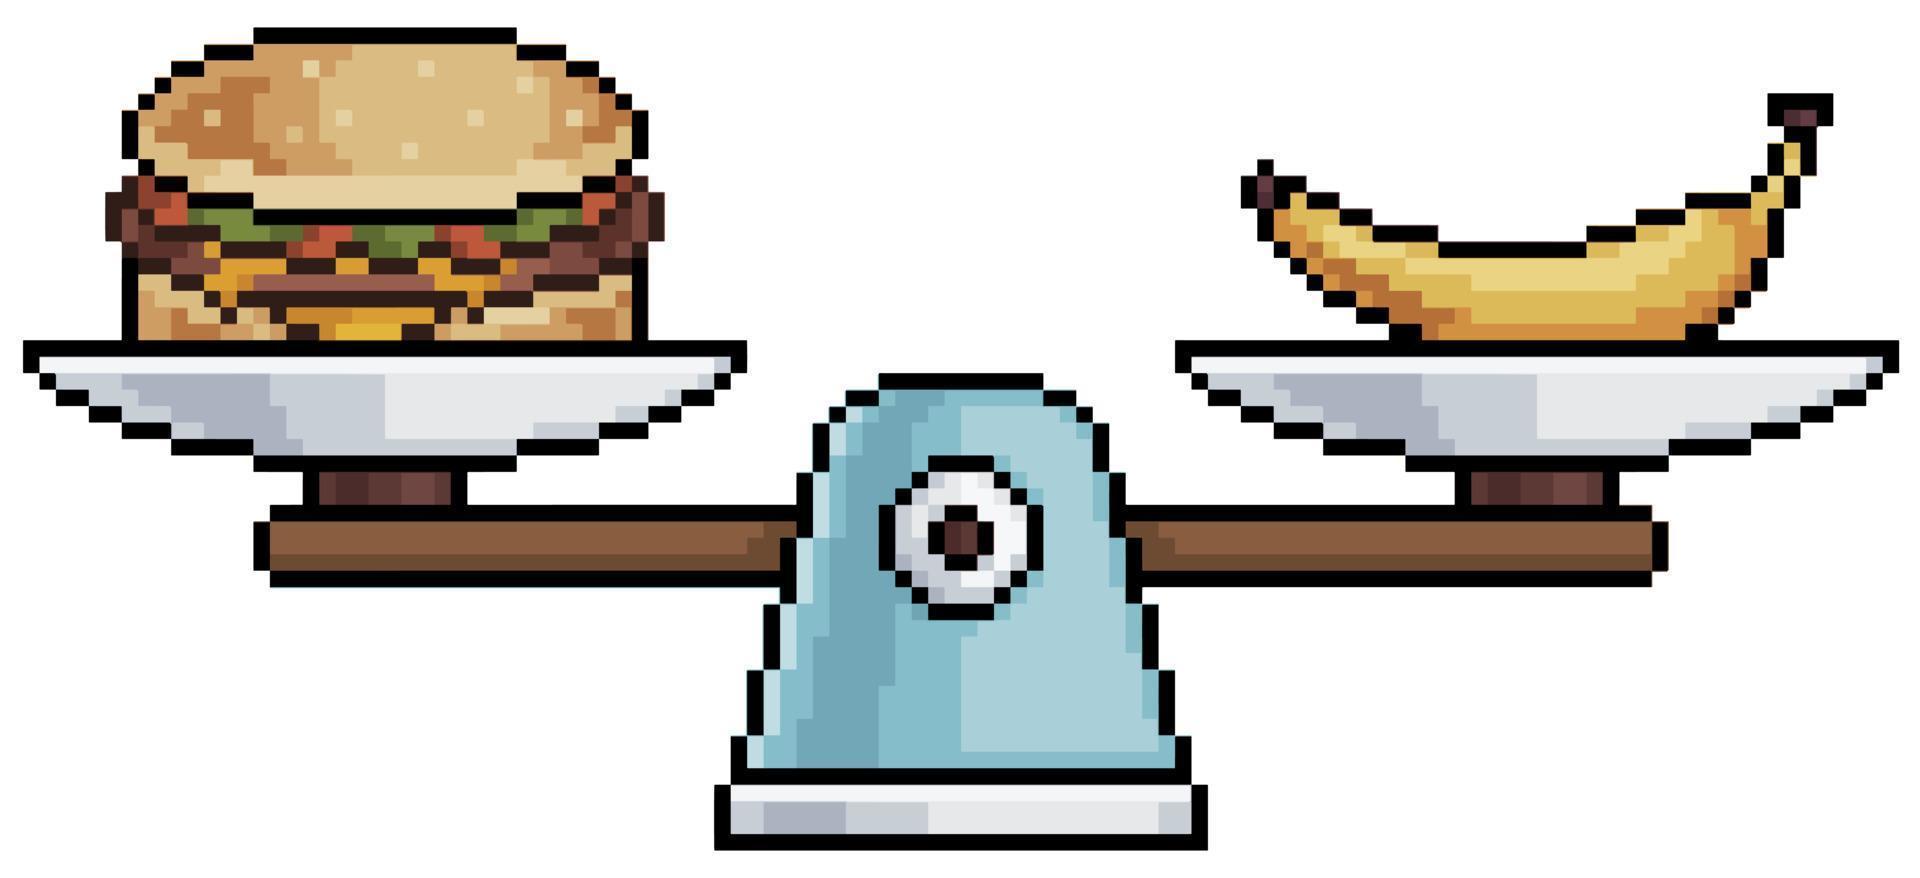 escala de comida de pixel art. icono de vector de comida saludable vs comida mala para juego de 8 bits sobre fondo blanco